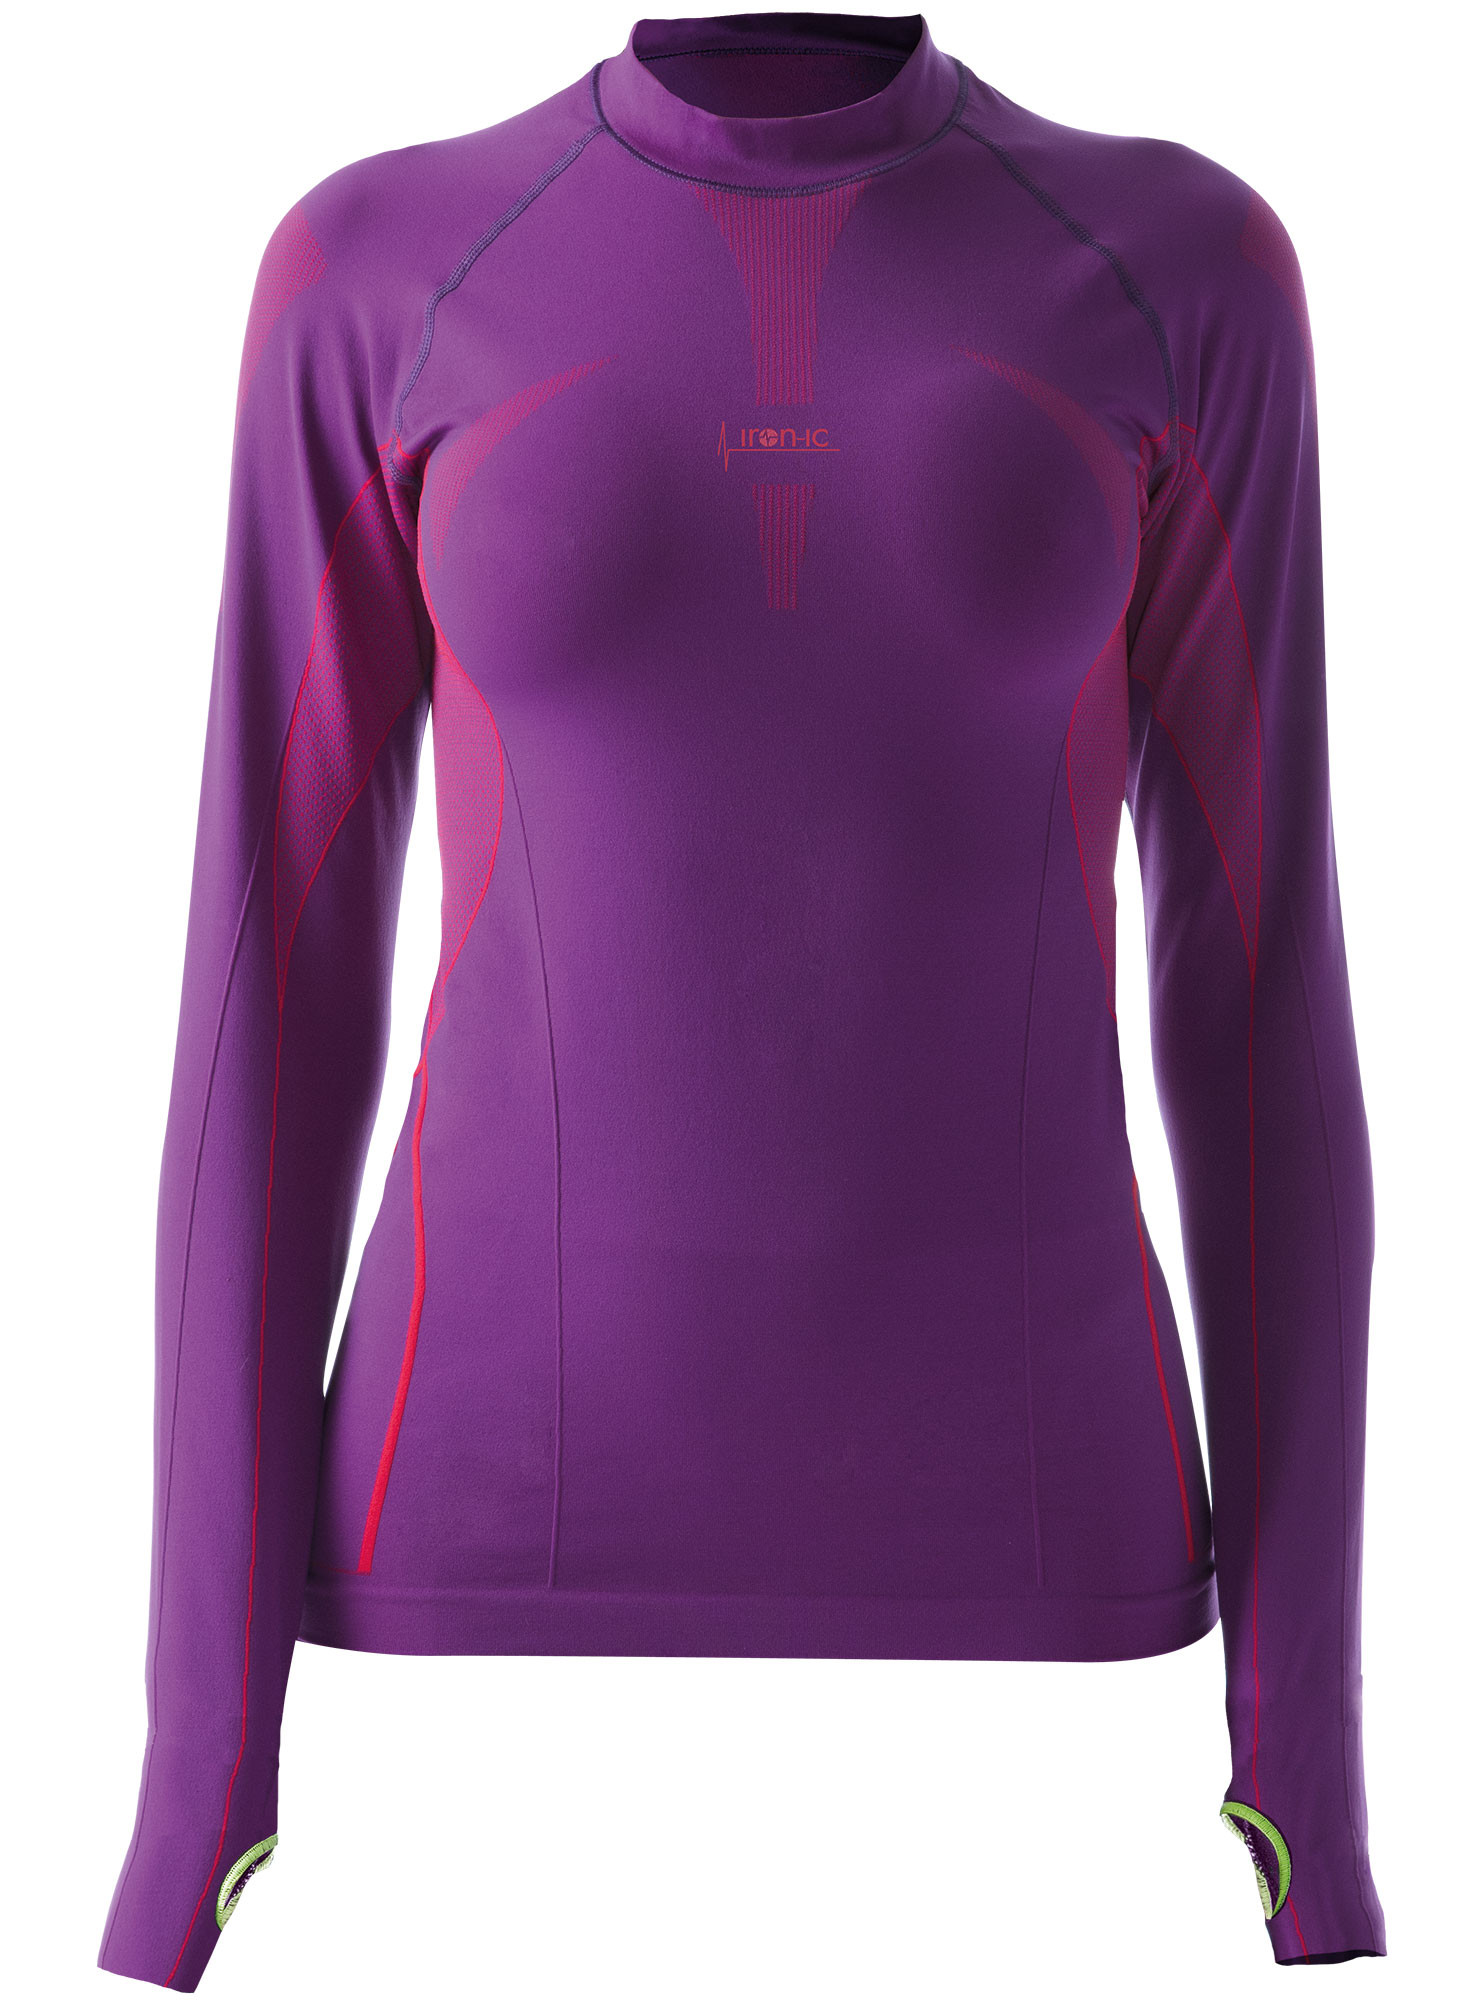 Dámské sportovní tričko s dlouhým rukávem IRON-IC - fialová Barva: Violet NY, Velikost: S/M